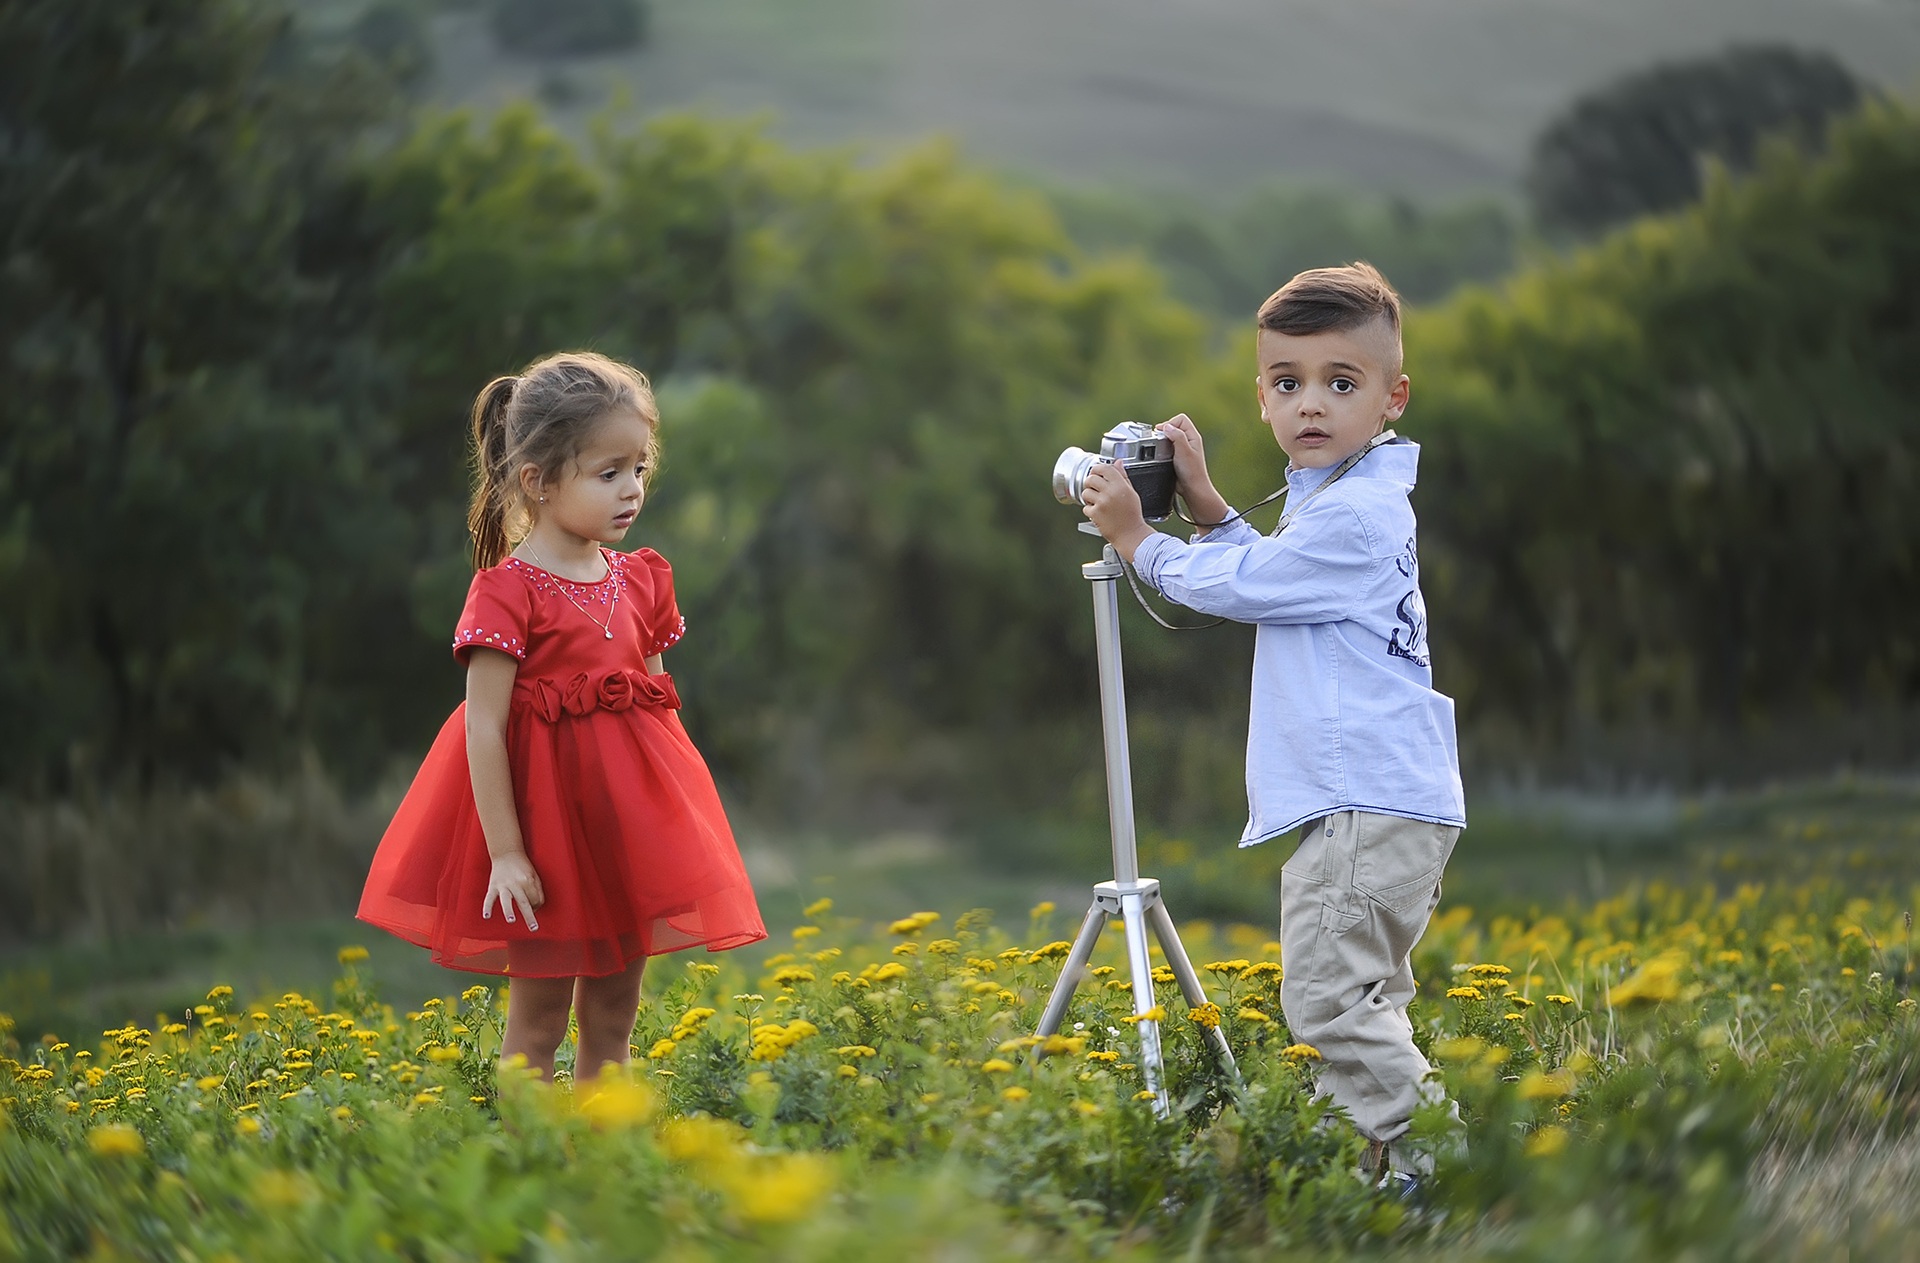 cute children photographers. little boy taking a photo of a little girl.